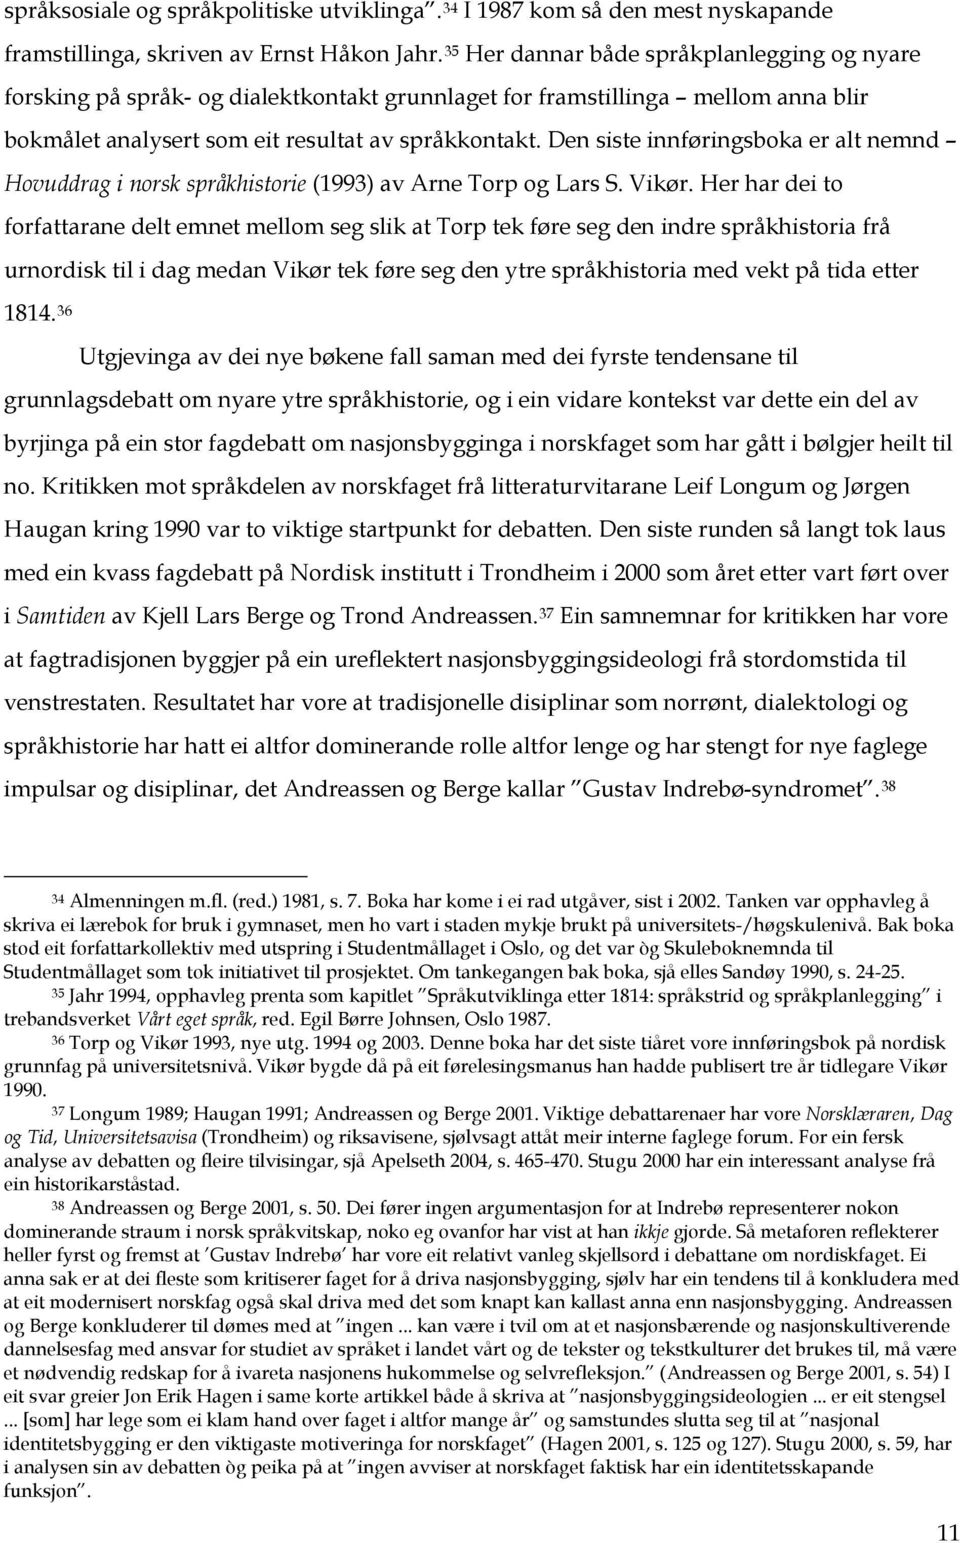 Den siste innføringsboka er alt nemnd Hovuddrag i norsk språkhistorie (1993) av Arne Torp og Lars S. Vikør.